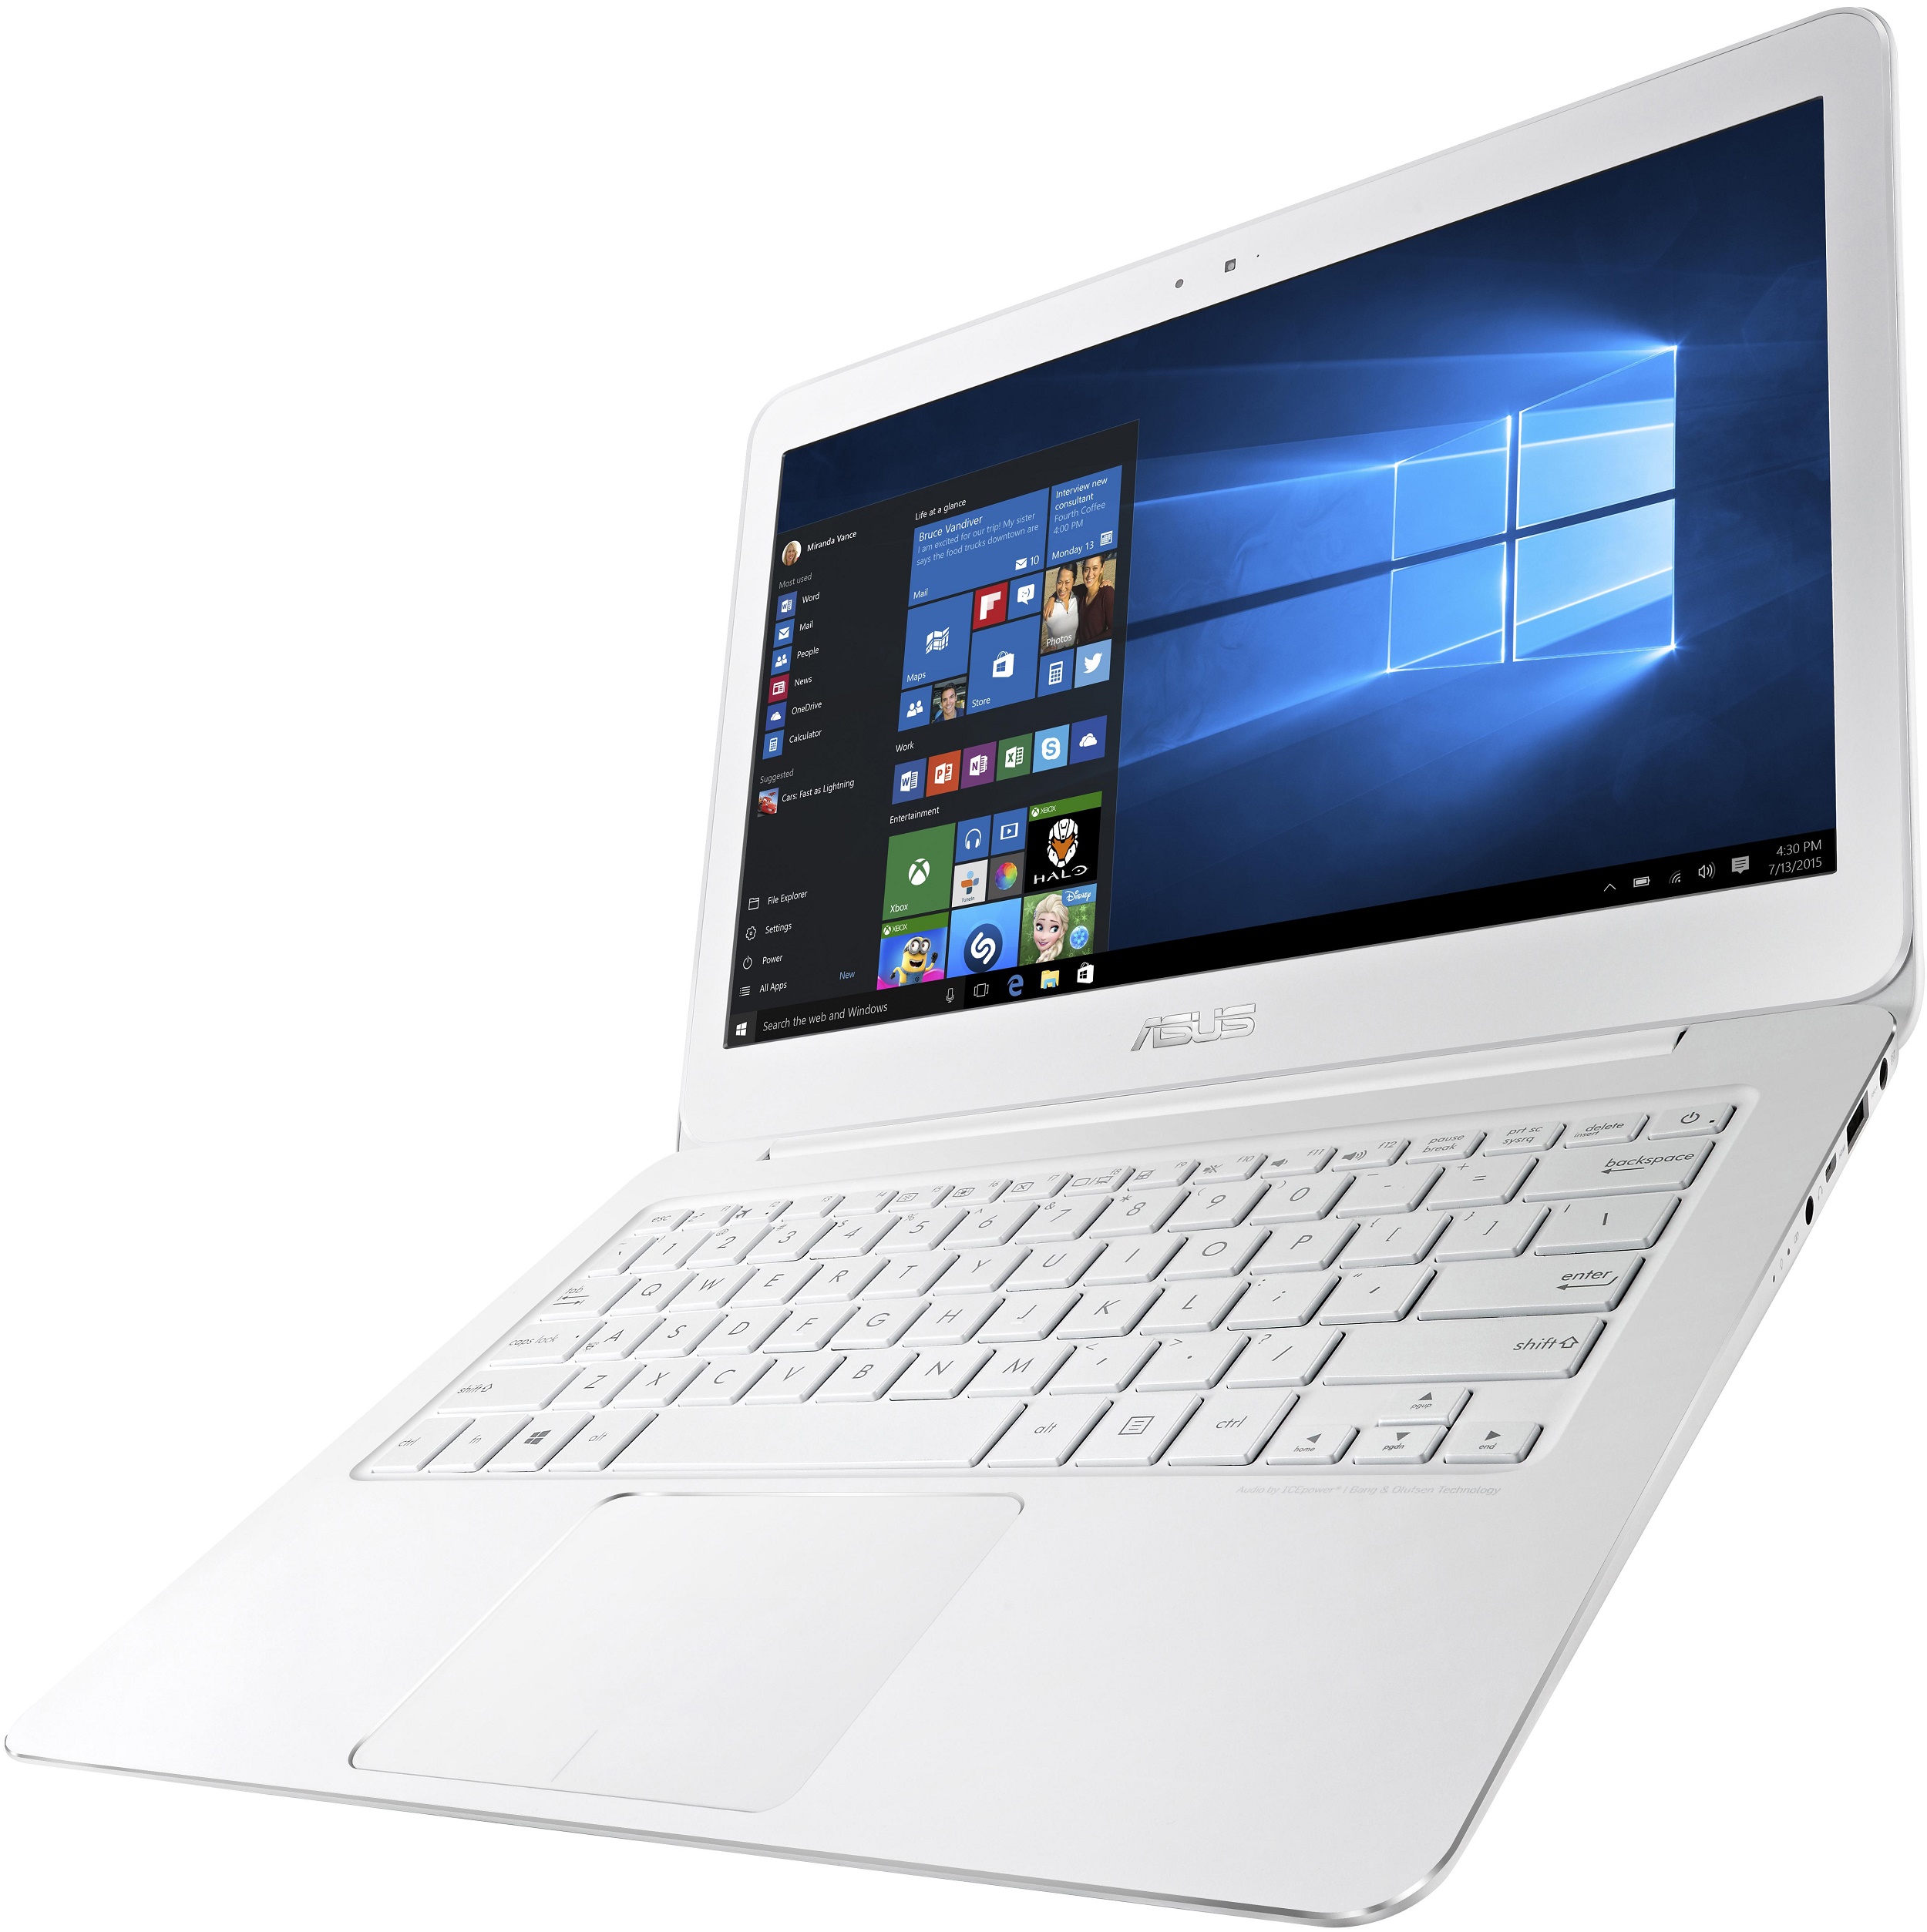 Купить Ноутбук Zenbook Ux305ca